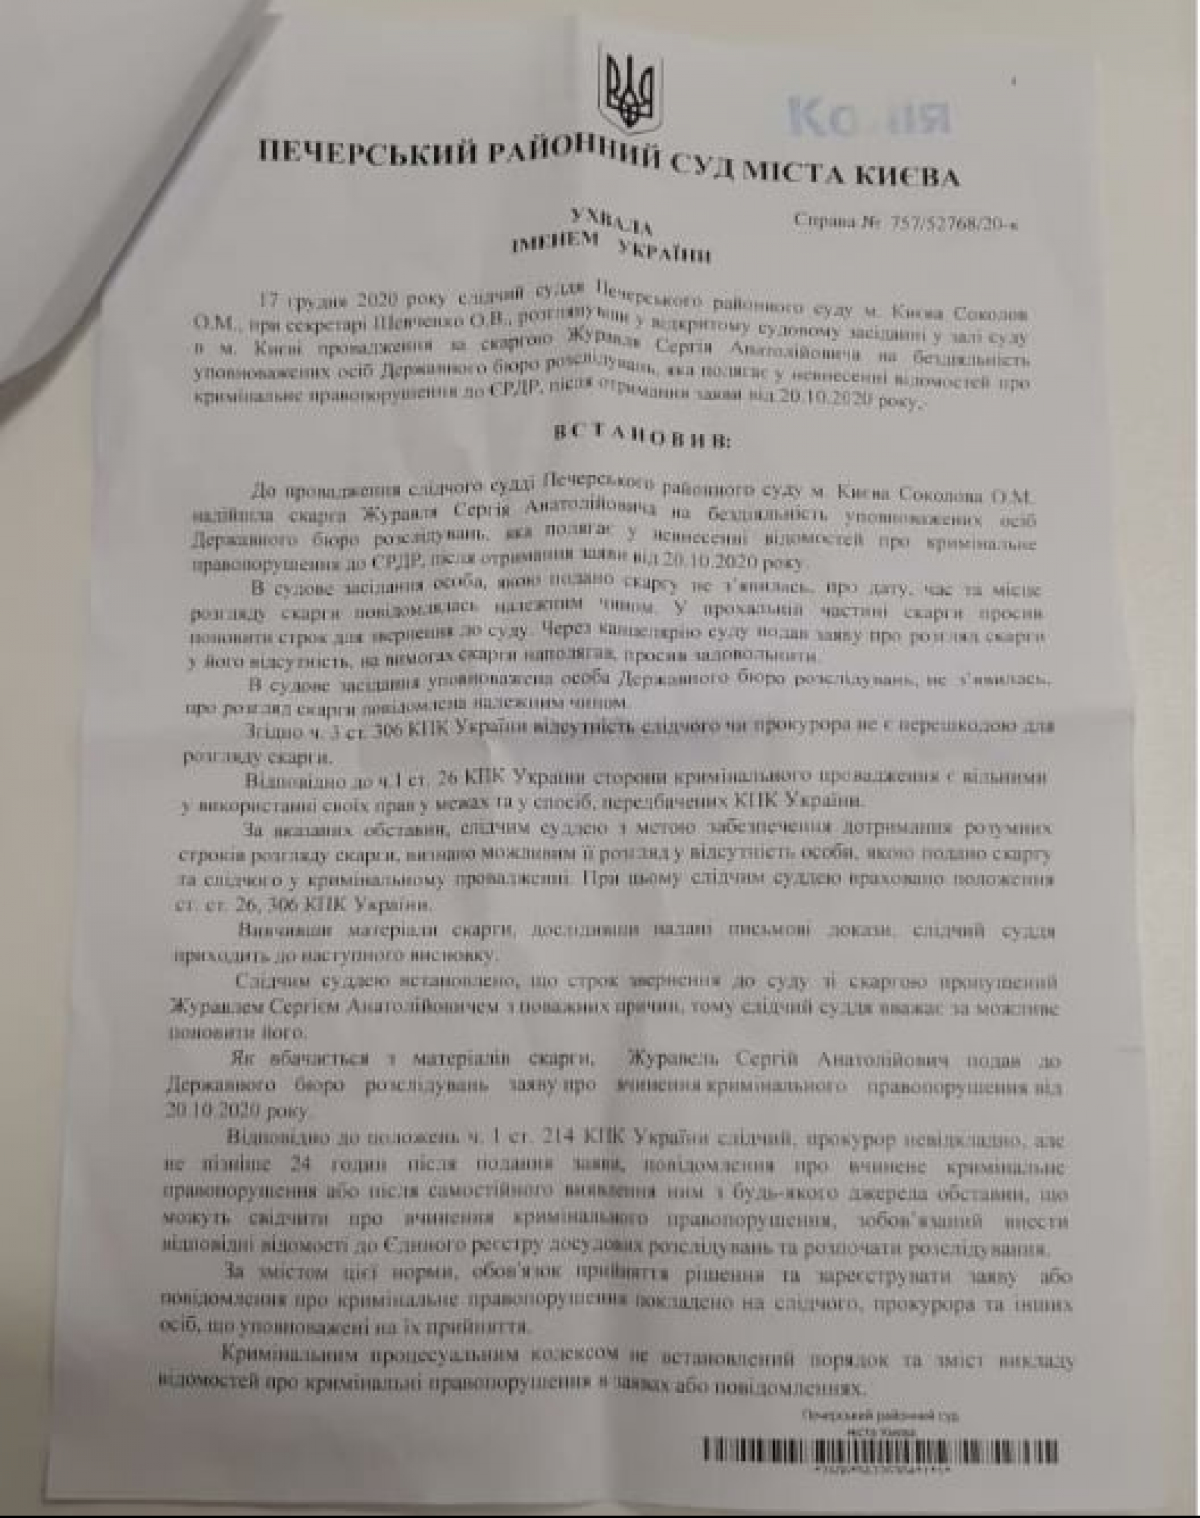 ГБР обязали открыть дело против Зеленского в отношении смерти украинского морпеха - фото 2